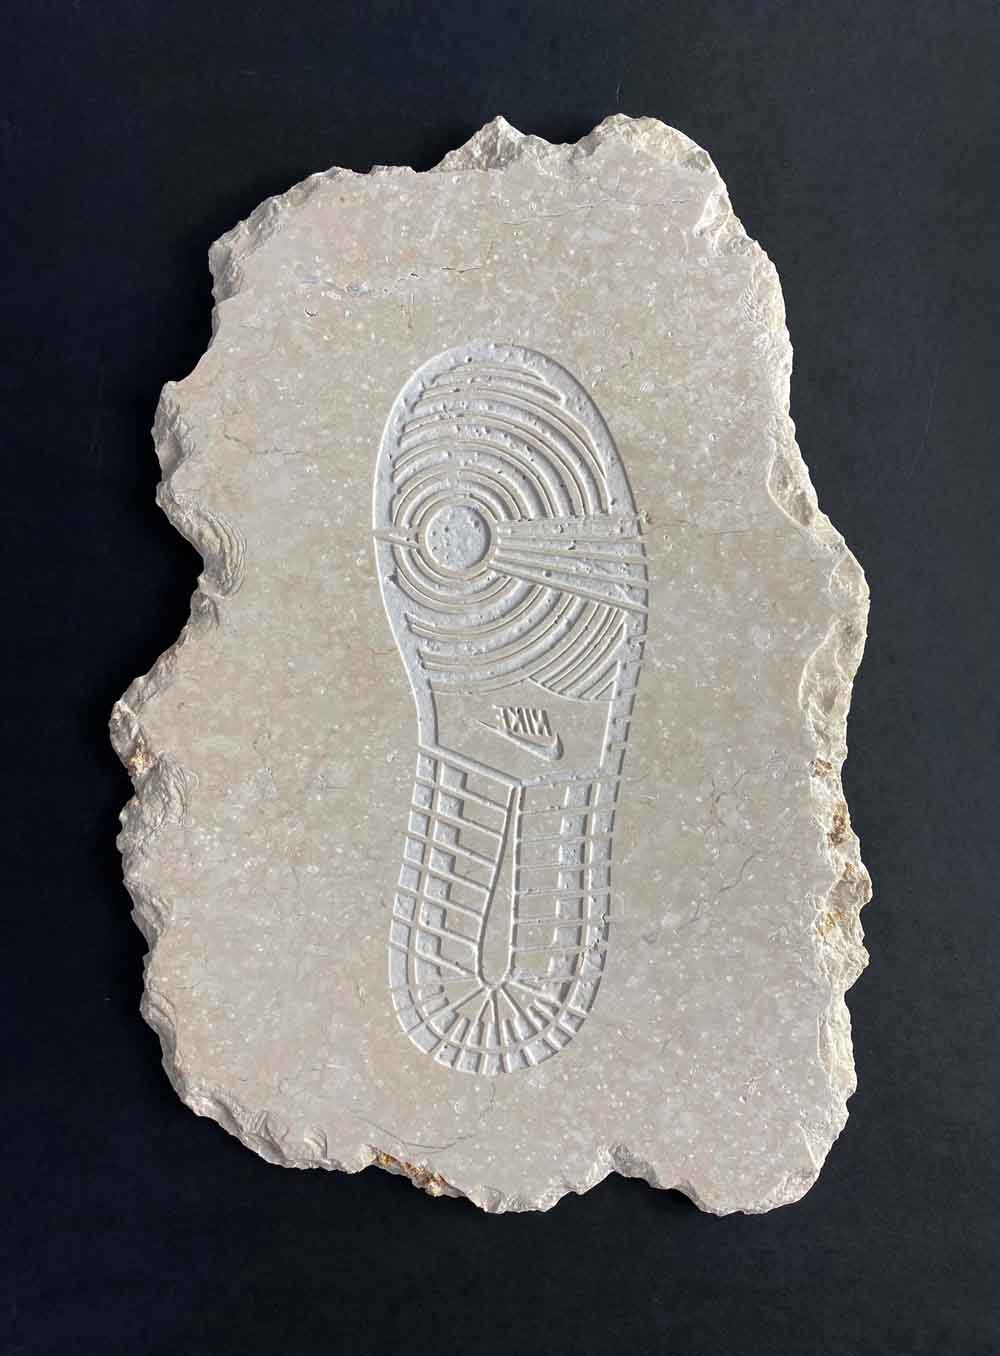 Future Fossils - Ichnike Sculpture Enlarged